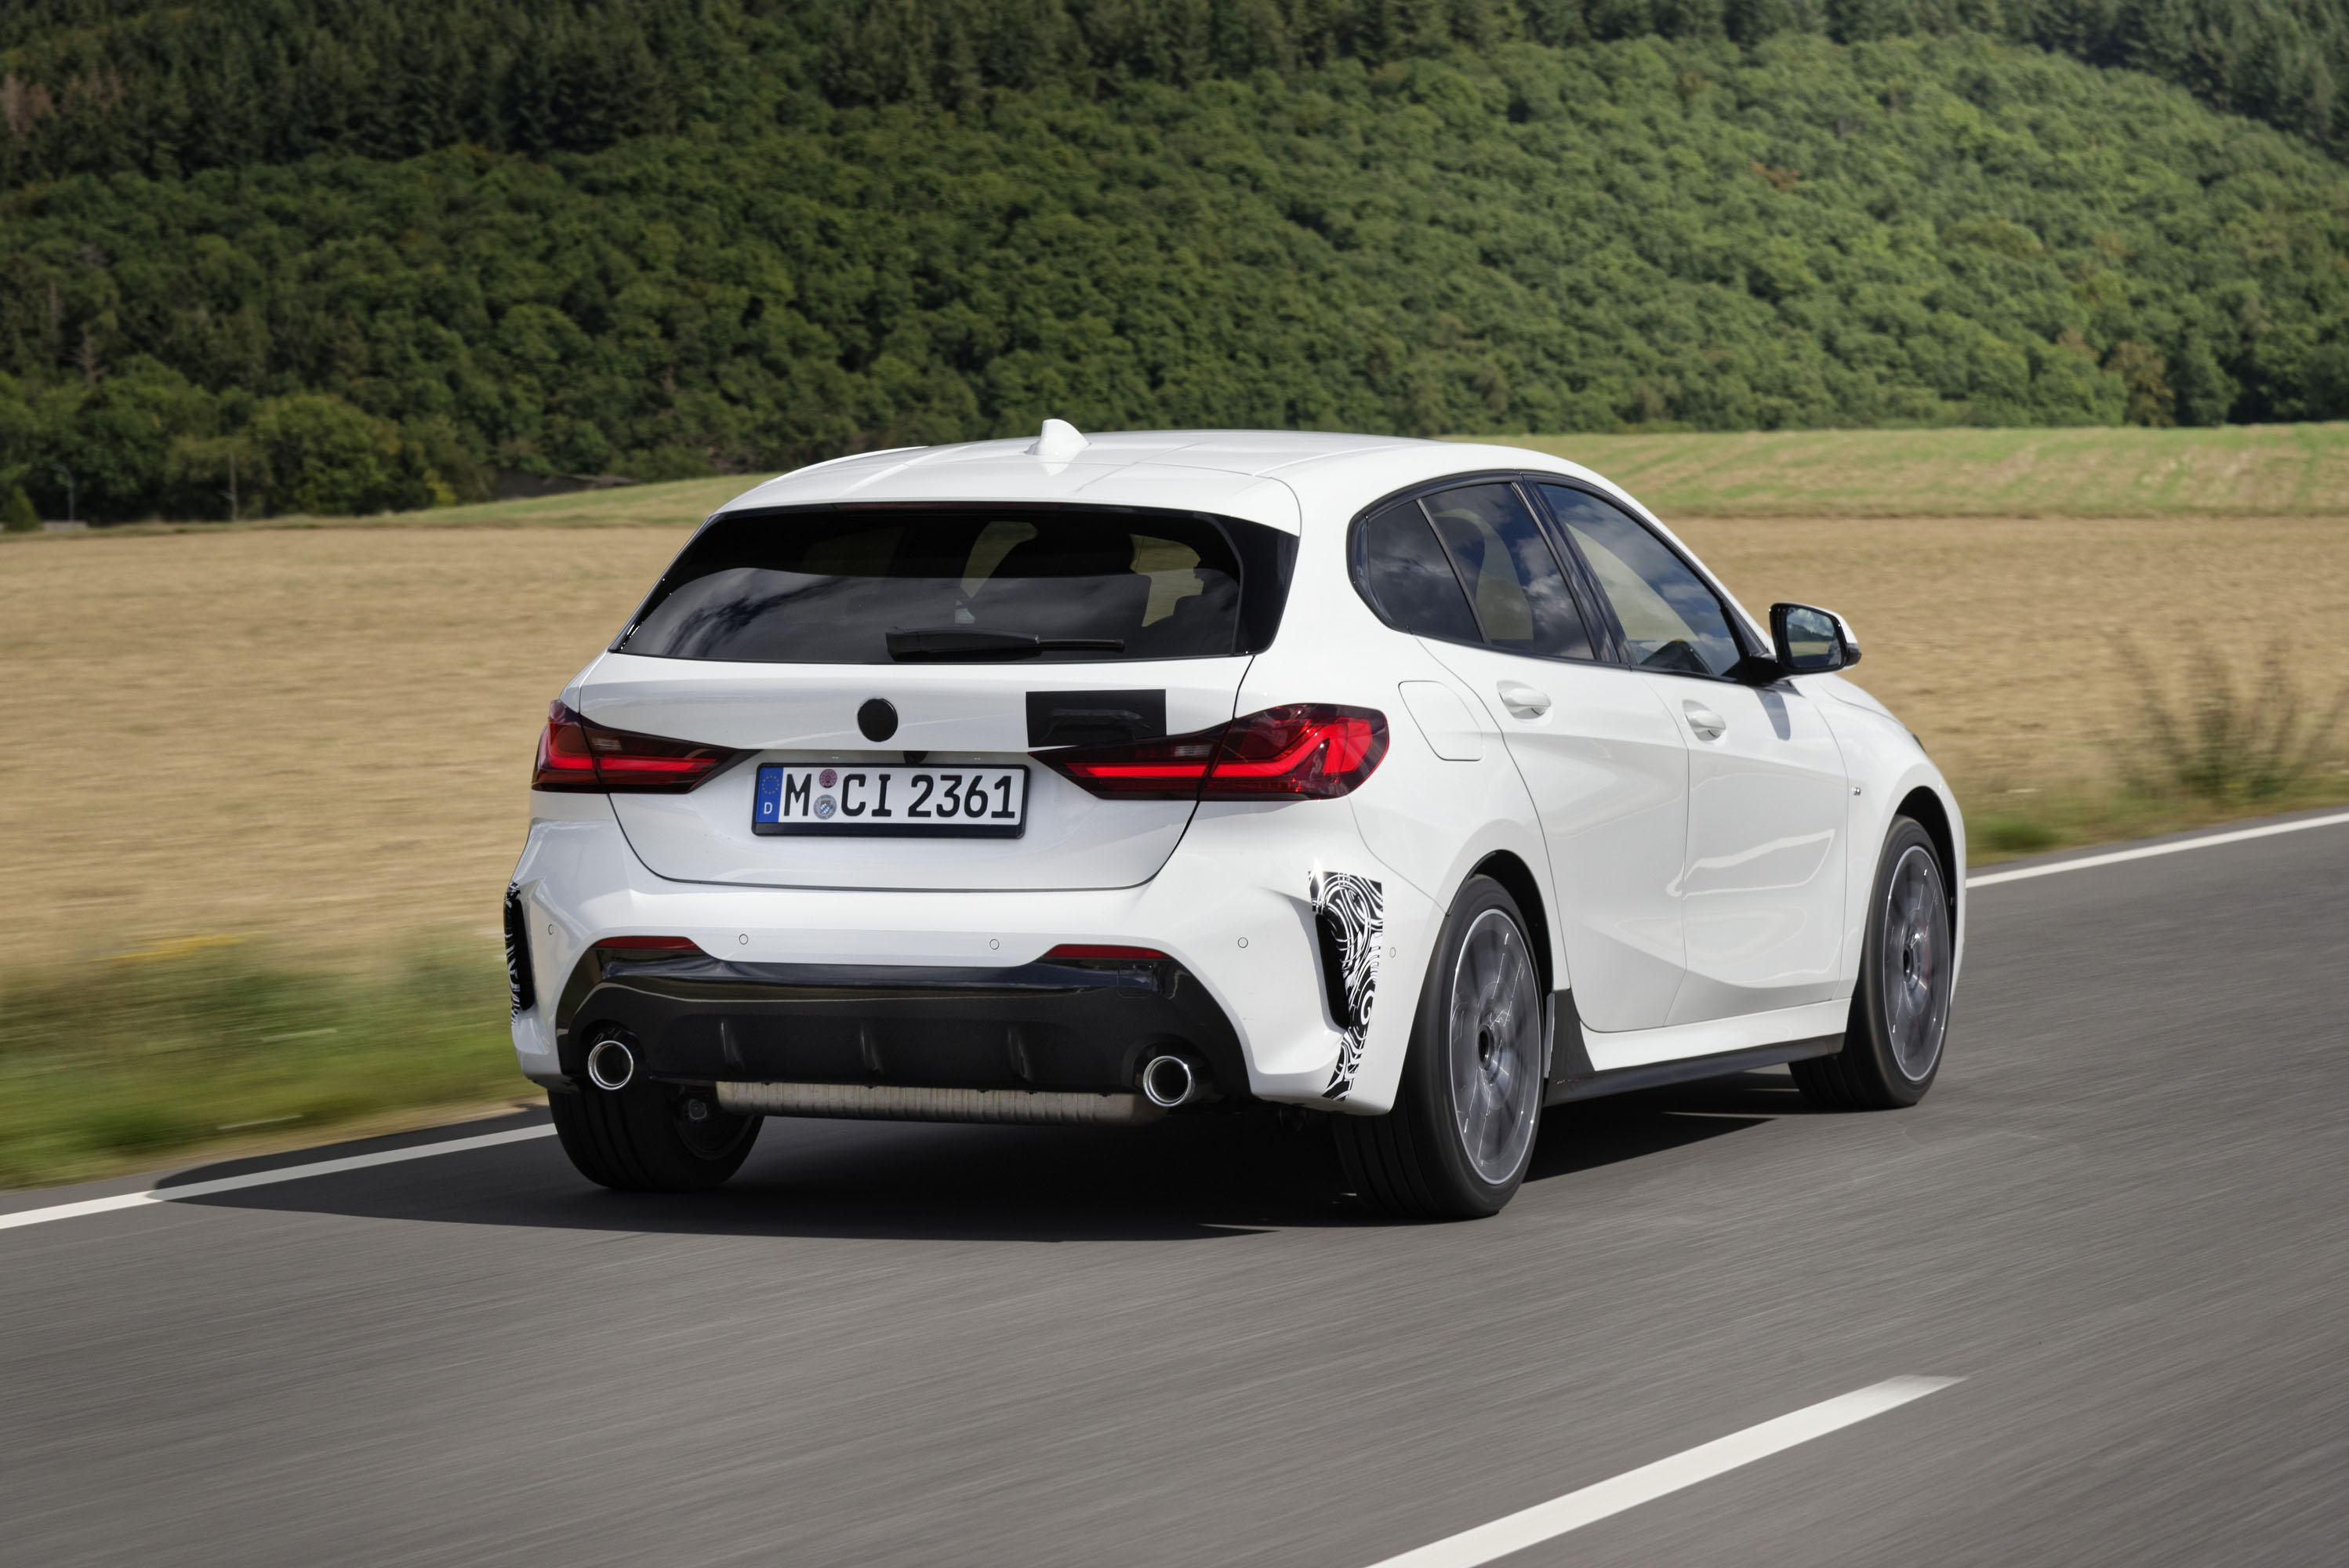 Новый BMW 128ti серийно оснащается 8-ступенчатой спортивной коробкой передач Steptronic и дифференциалом повышенного трения Torsen, обеспечивающим лучшее сцепление с дорогой на передней оси. Он имеет специально настроенную спортивную подвеску M, вклю